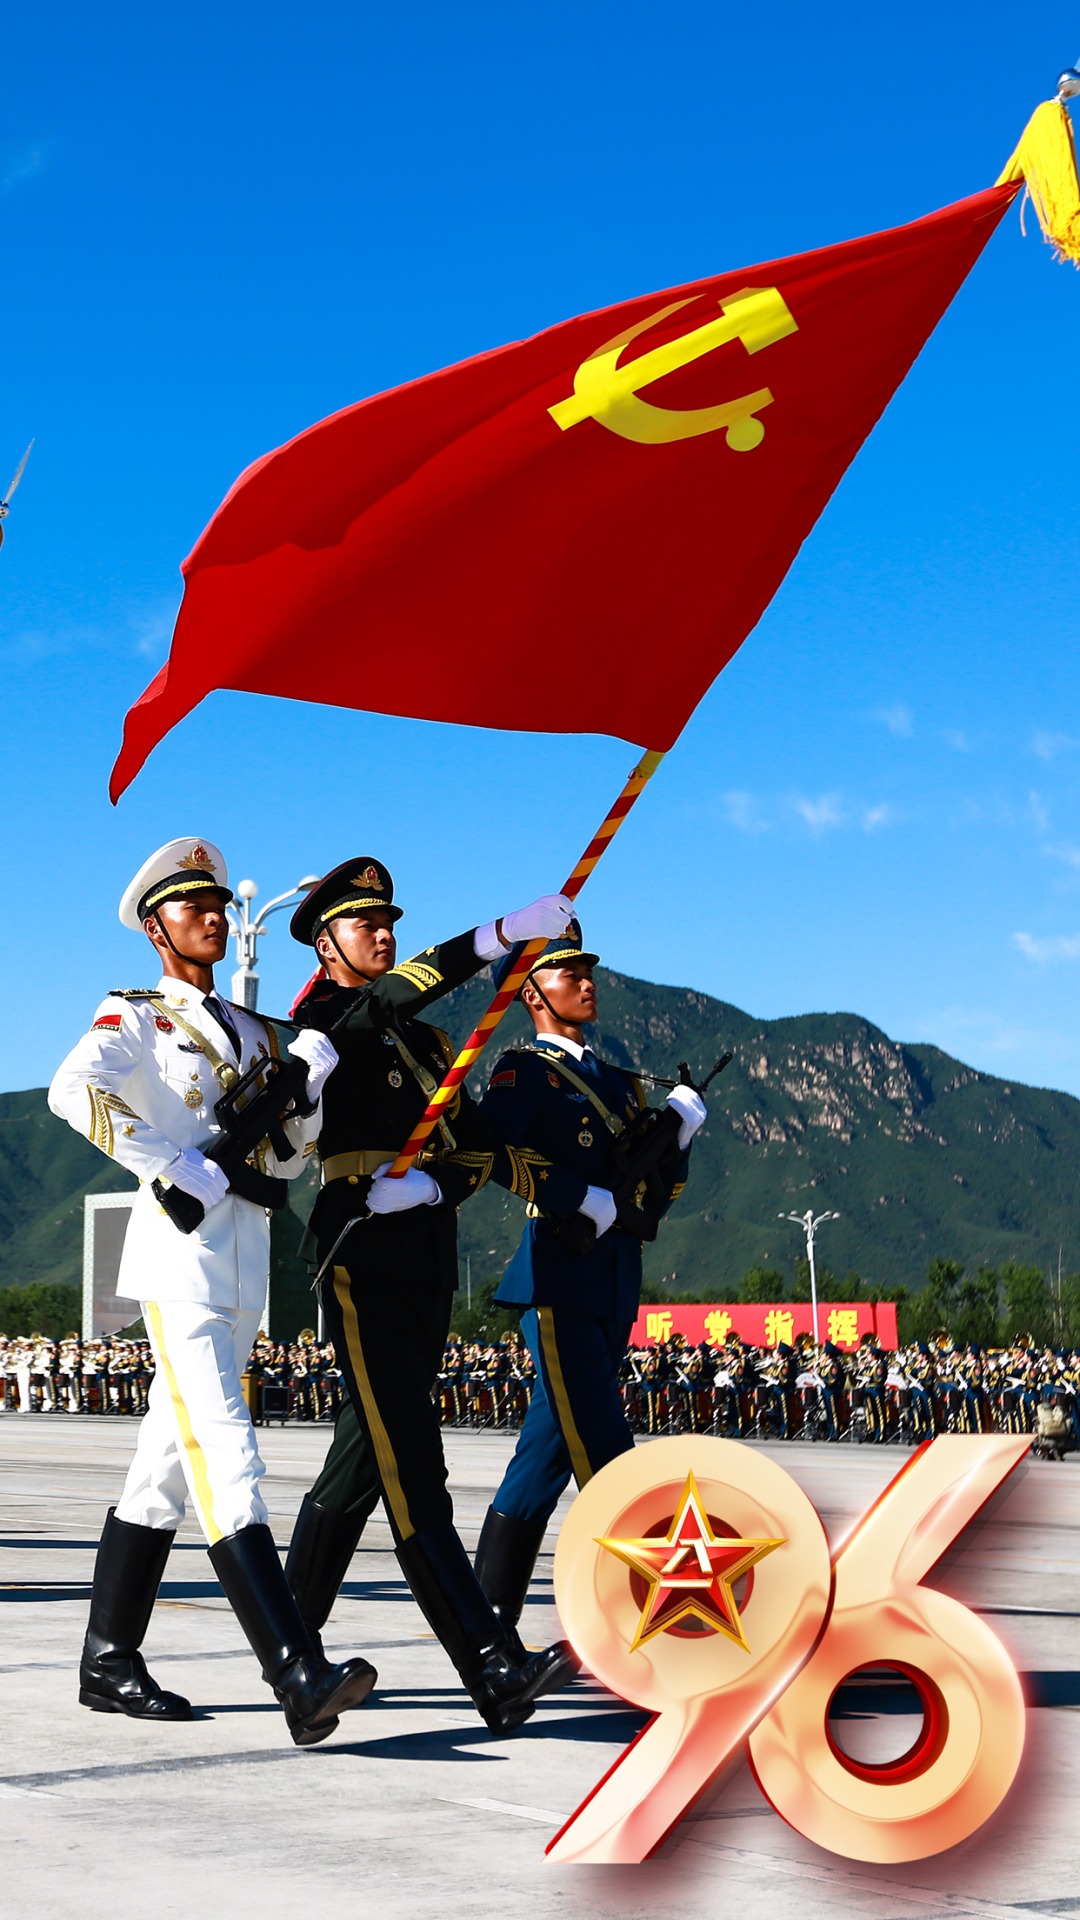 中国人民解放军建军96周年,致敬人民子弟兵:万里河山,有你心安